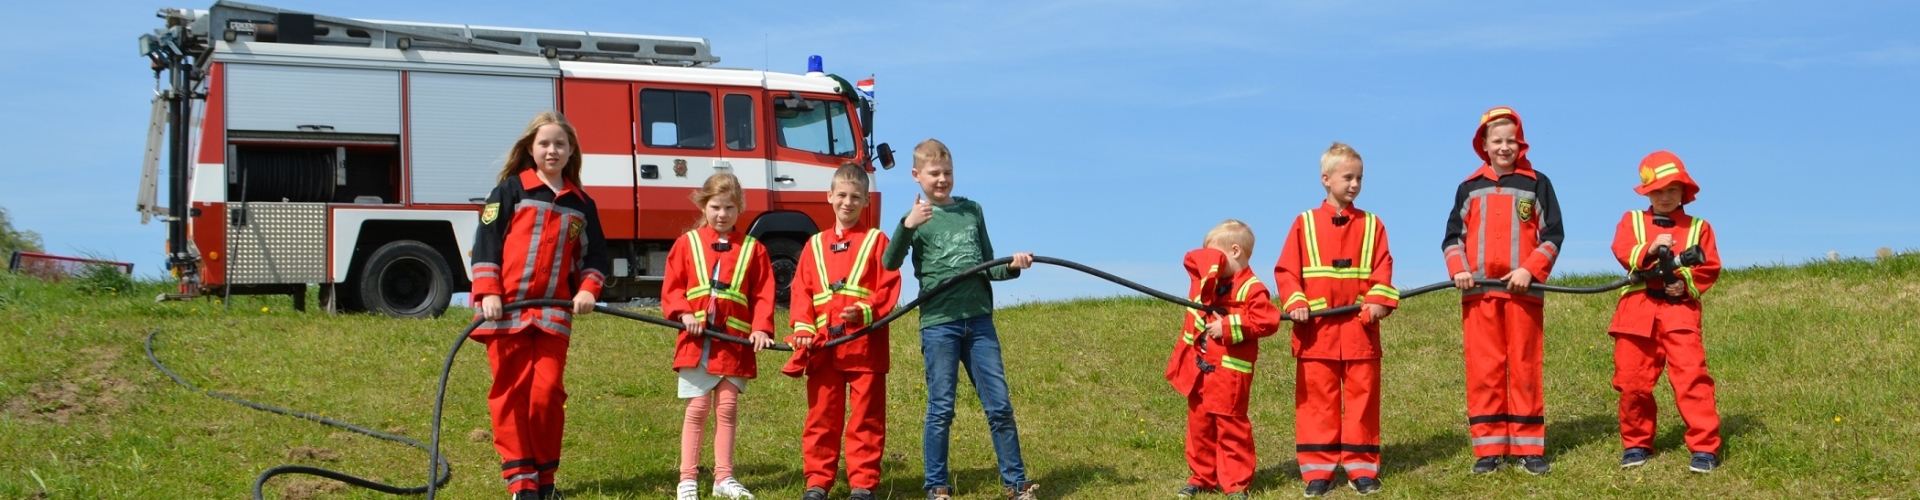 Kinderfeestje Den Bosch met brandweerauto